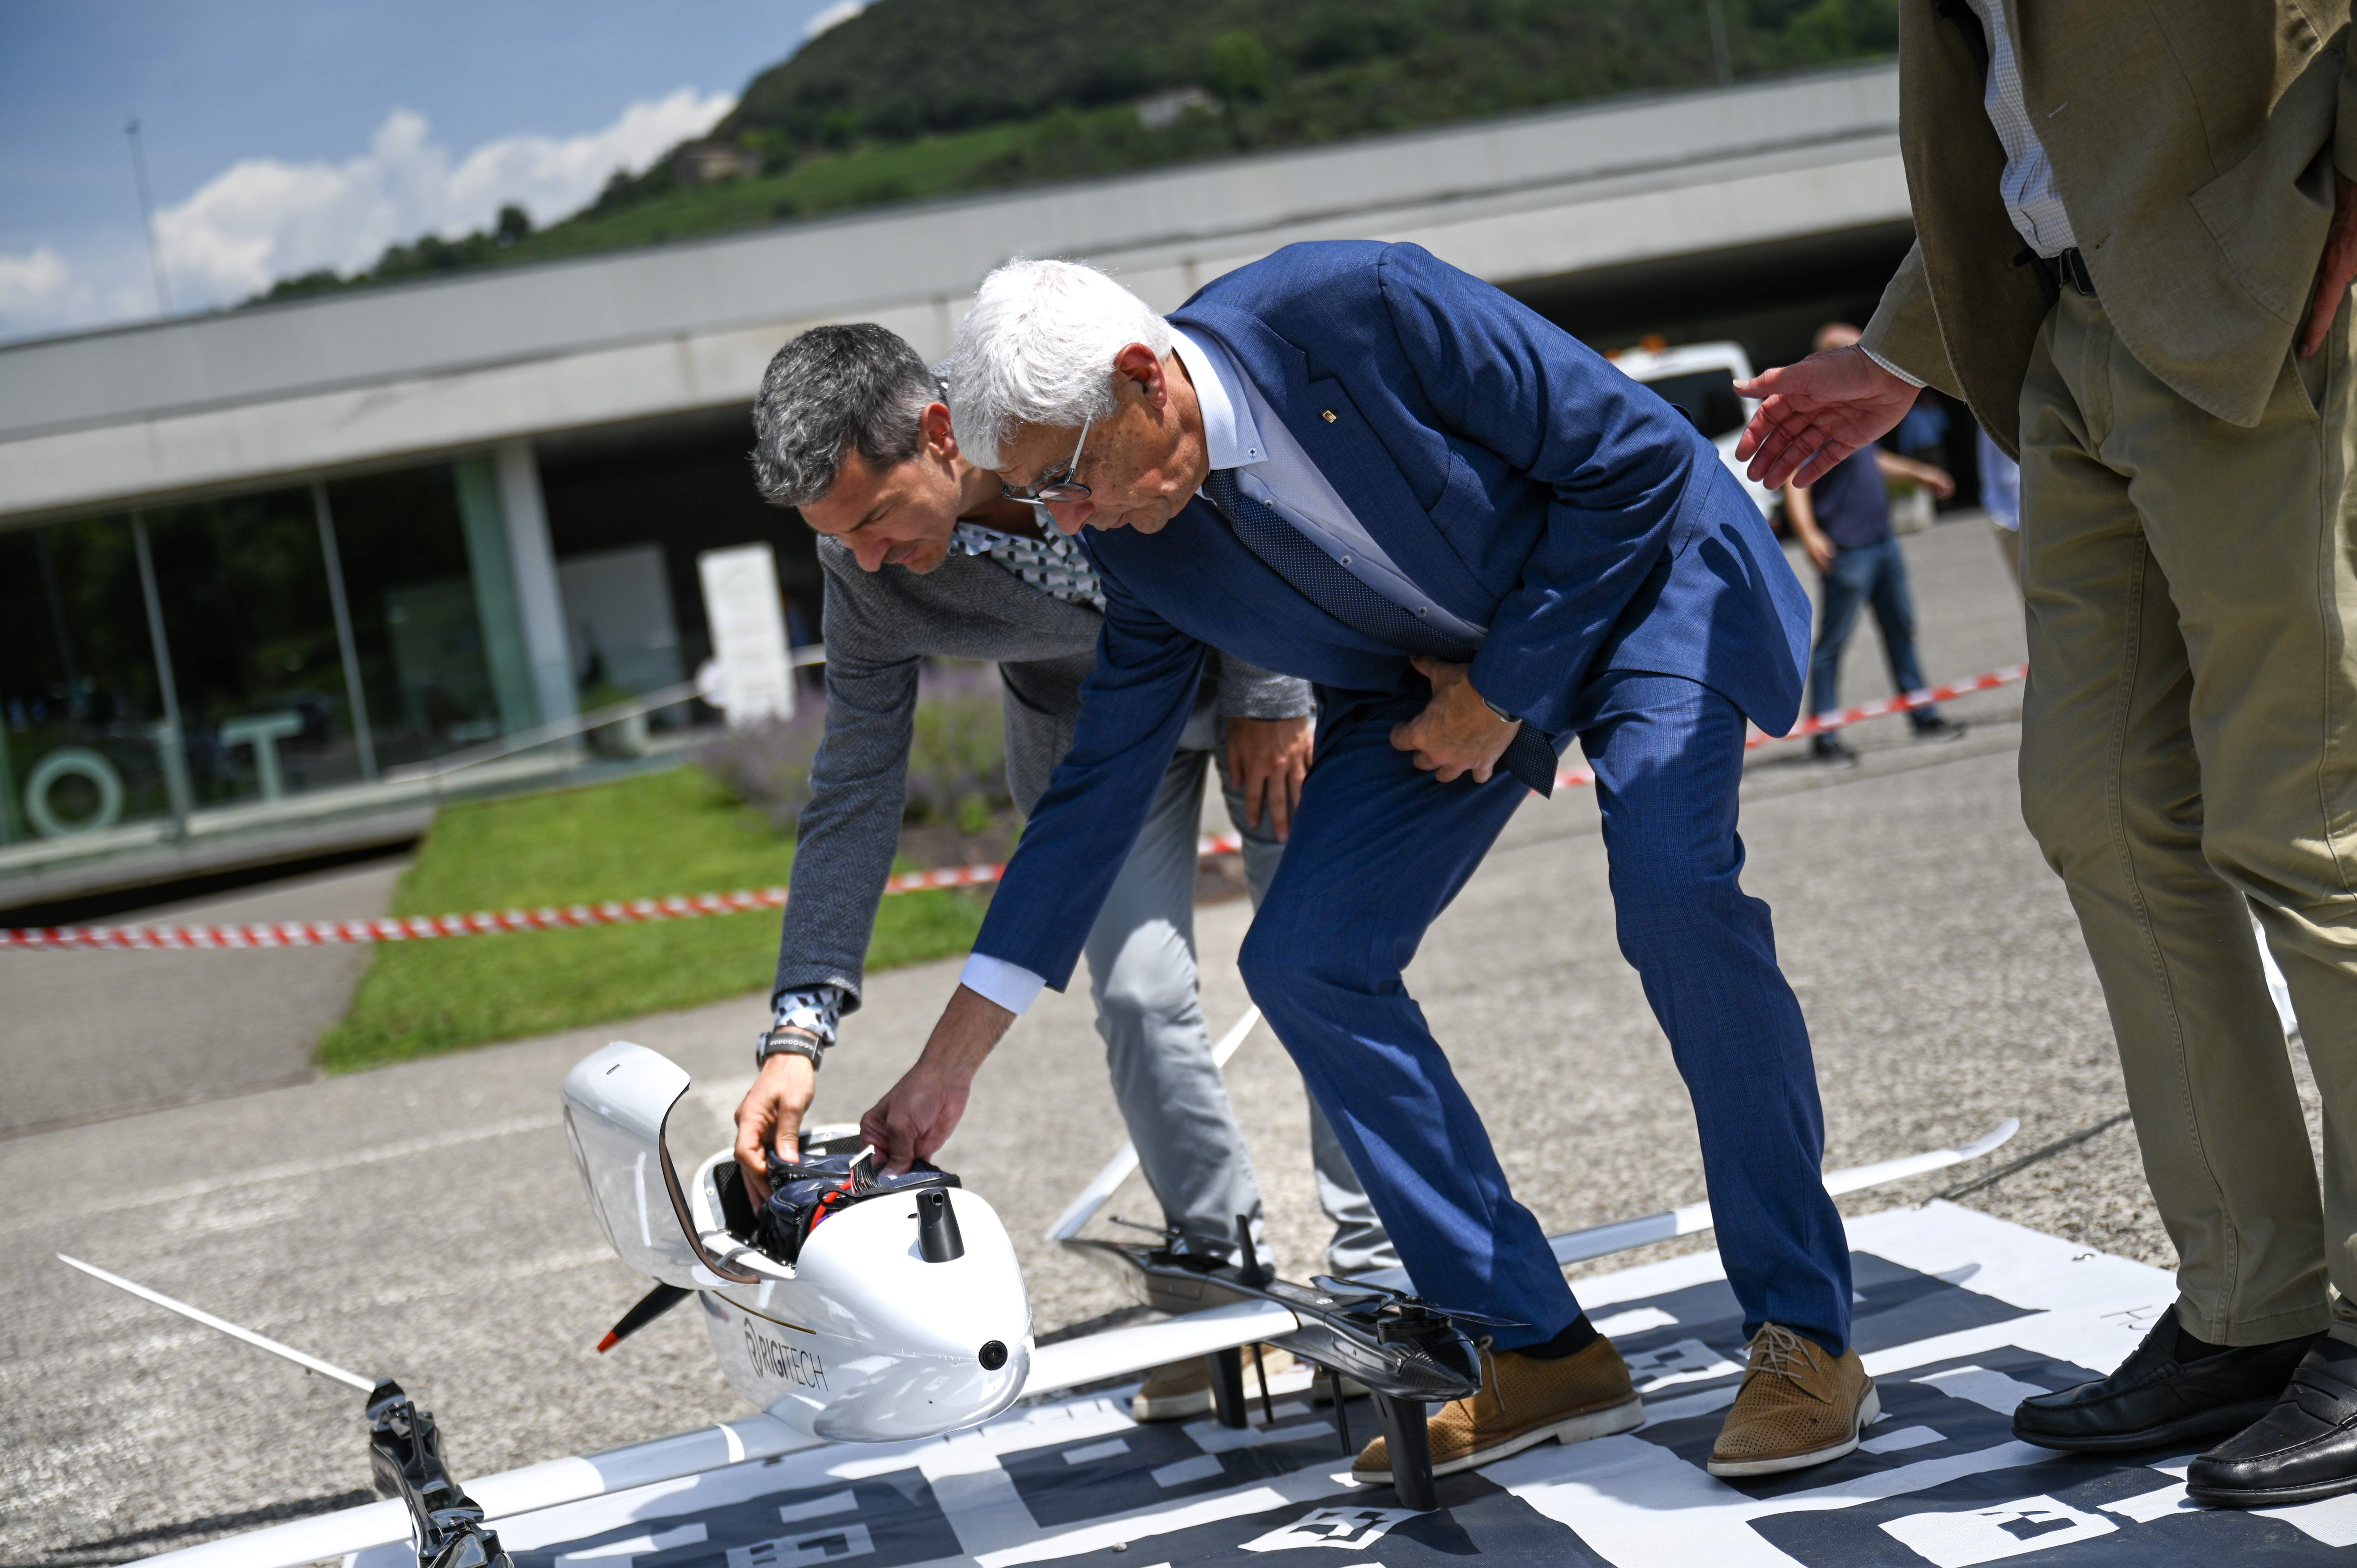 CatSalut utilizará drones para trasladar muestras biológicas y material sanitario